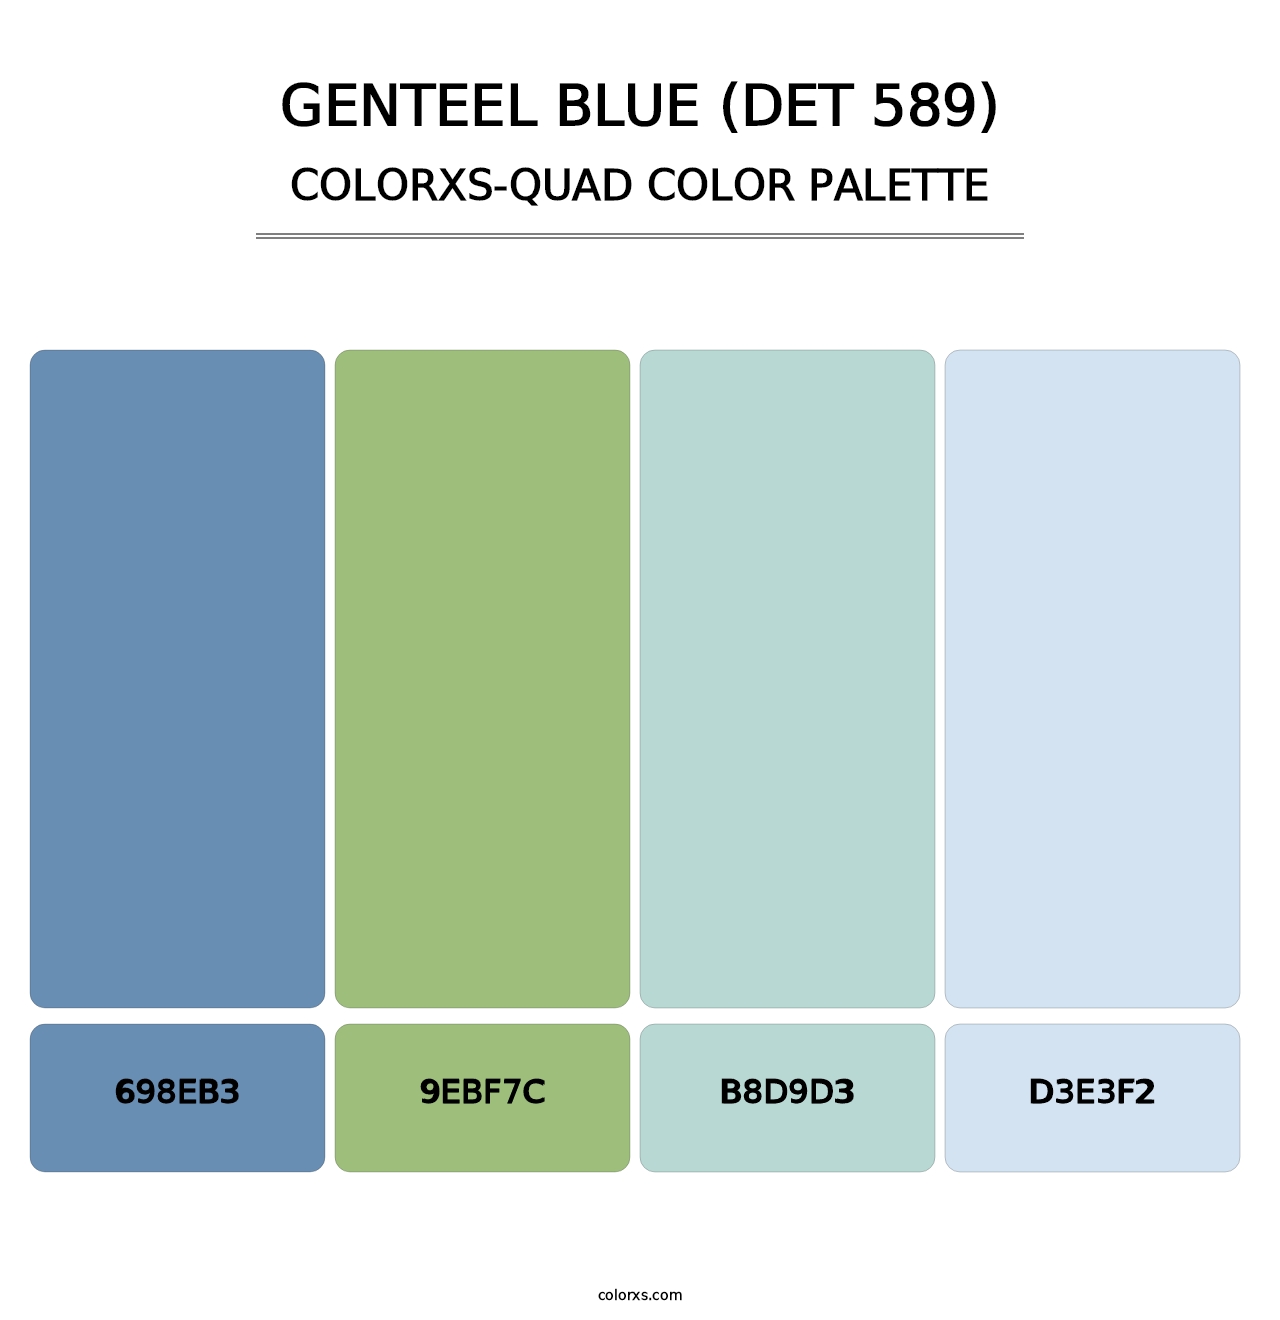 Genteel Blue (DET 589) - Colorxs Quad Palette